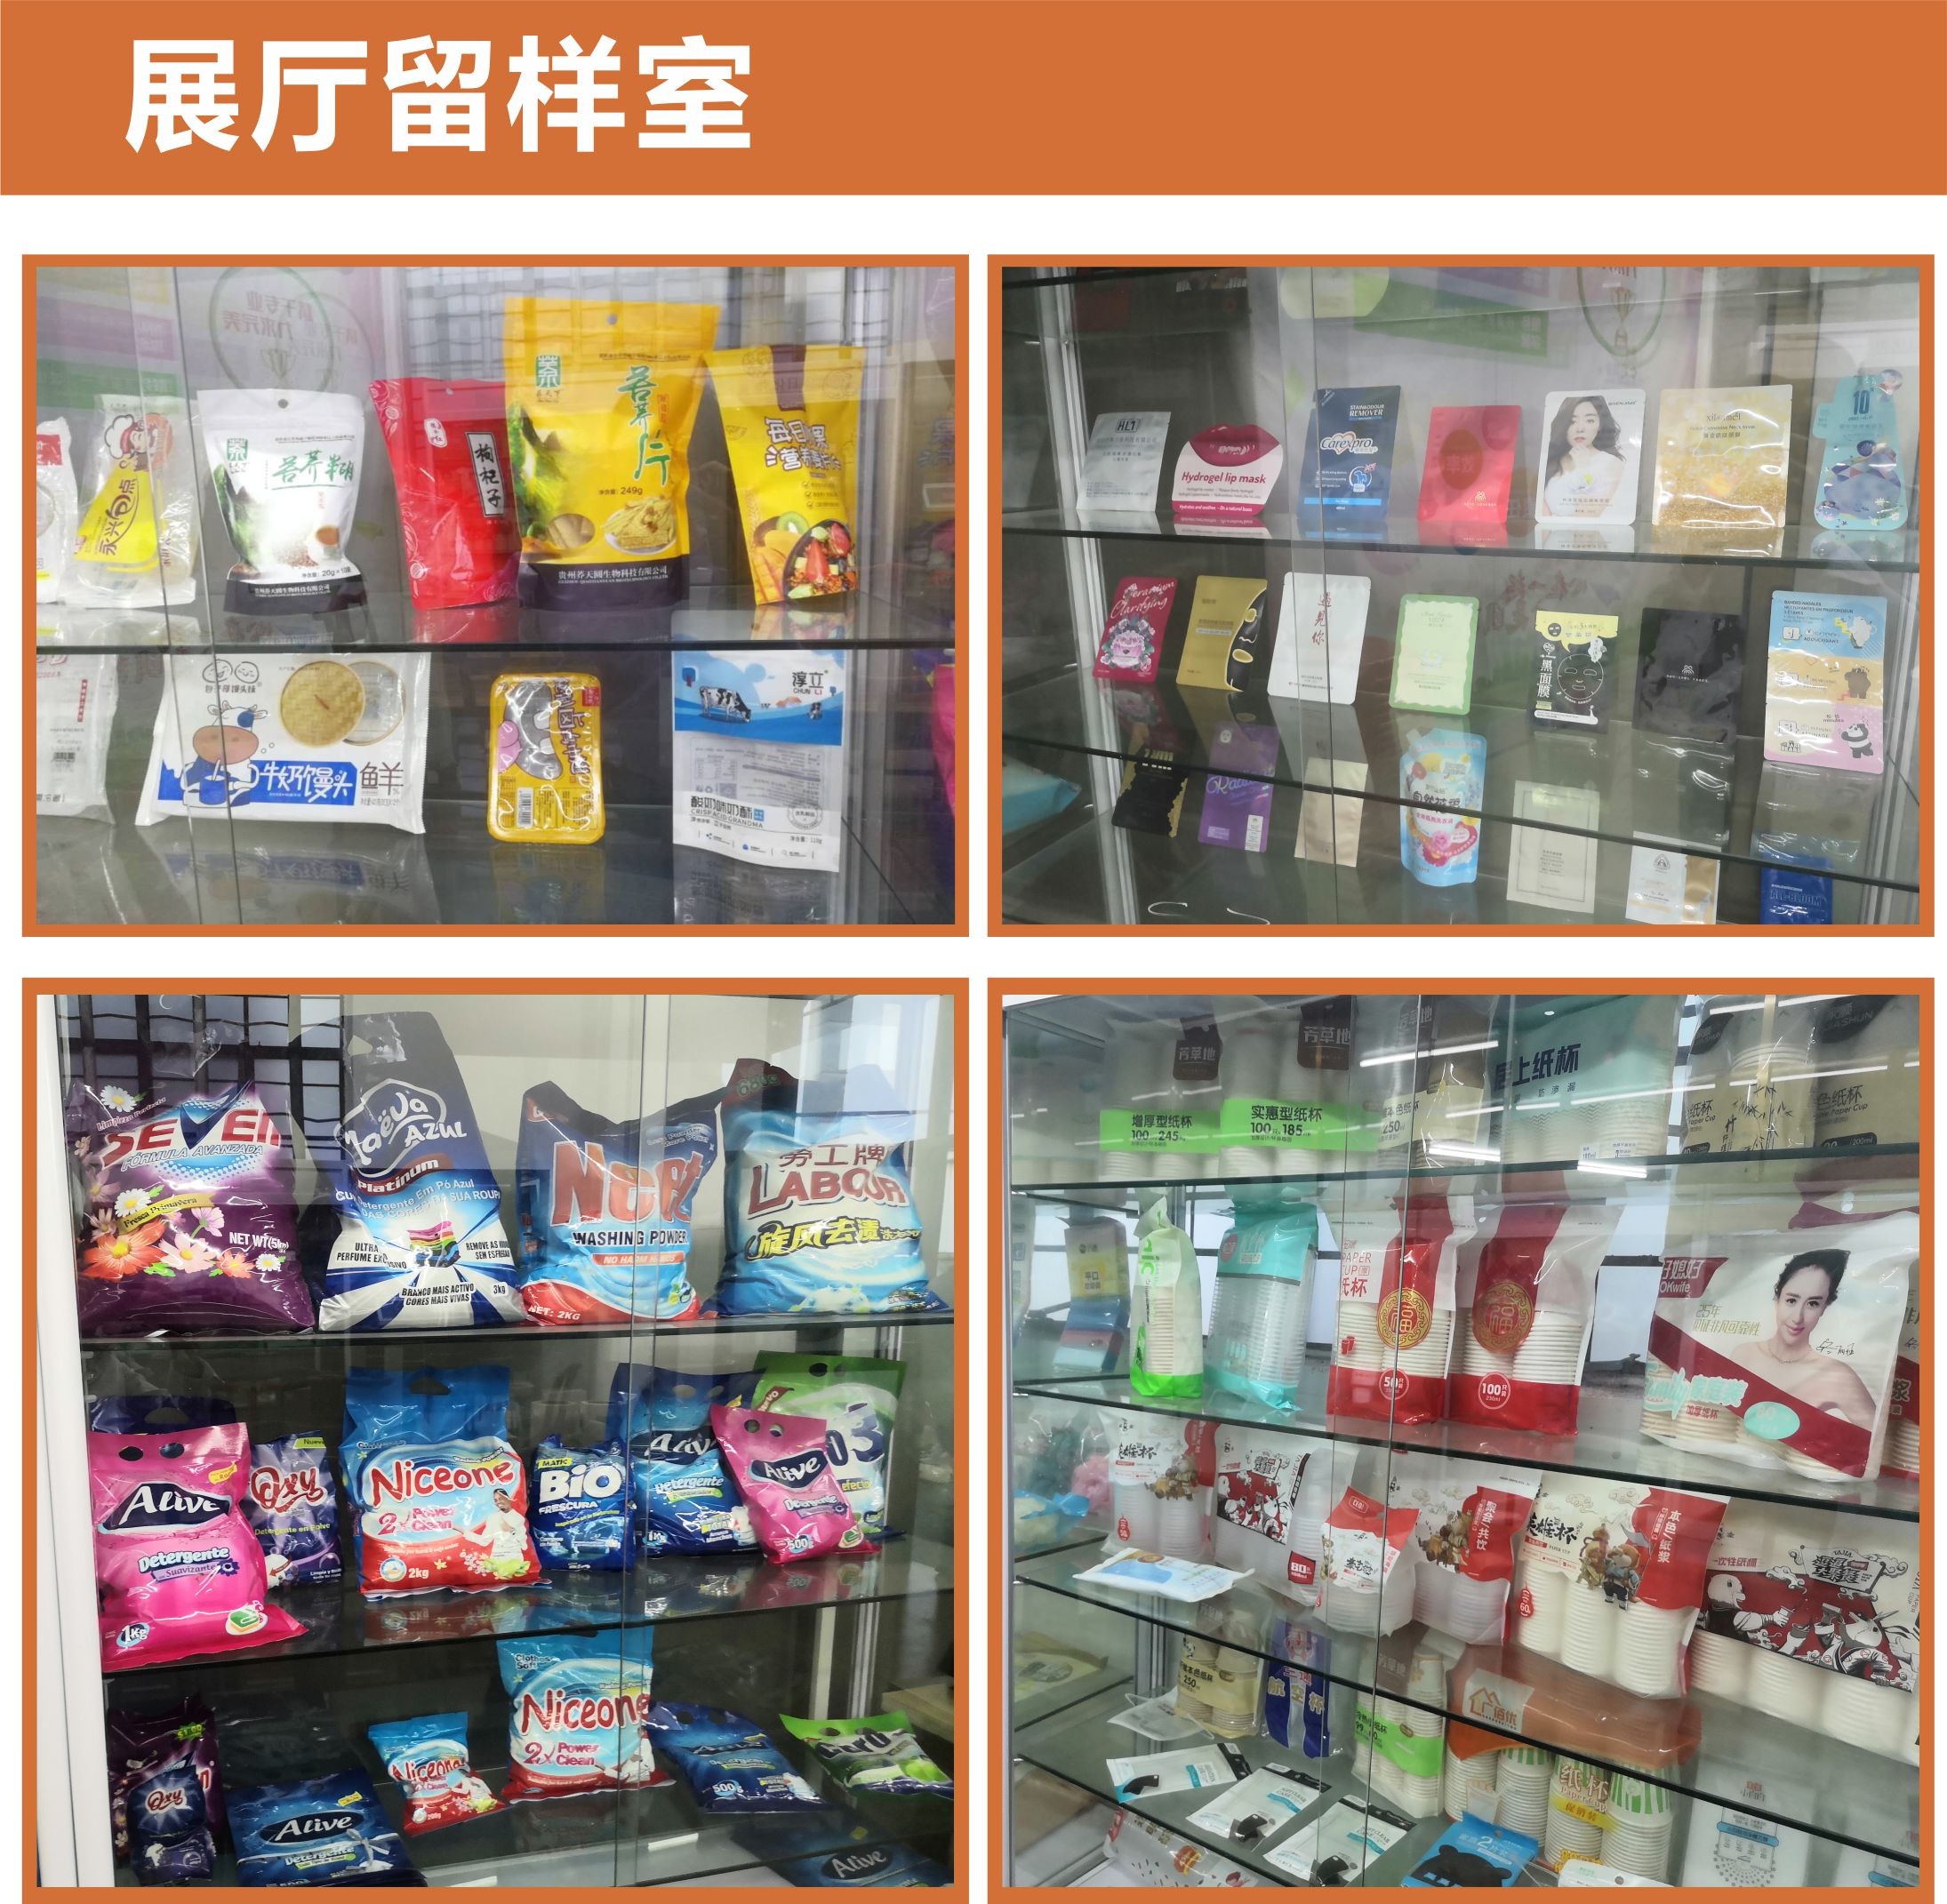 guangzhou hong sheng packaing matereials co.,Ltd.